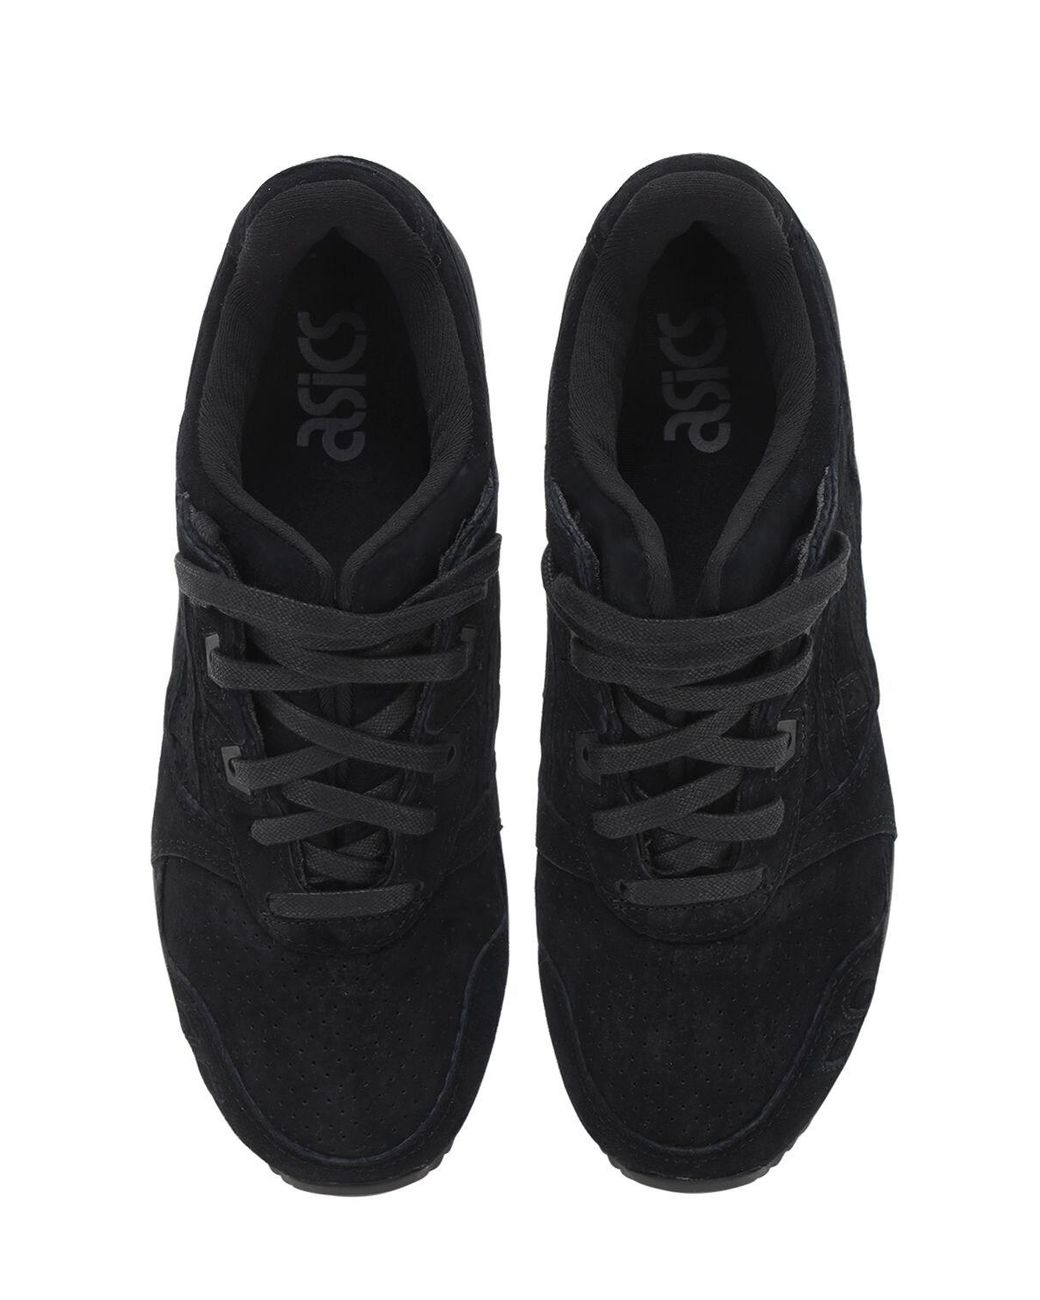 Asics Suede Gel-lyte Iii Og Sneakers in Black/Black (Black) - Save 54% |  Lyst